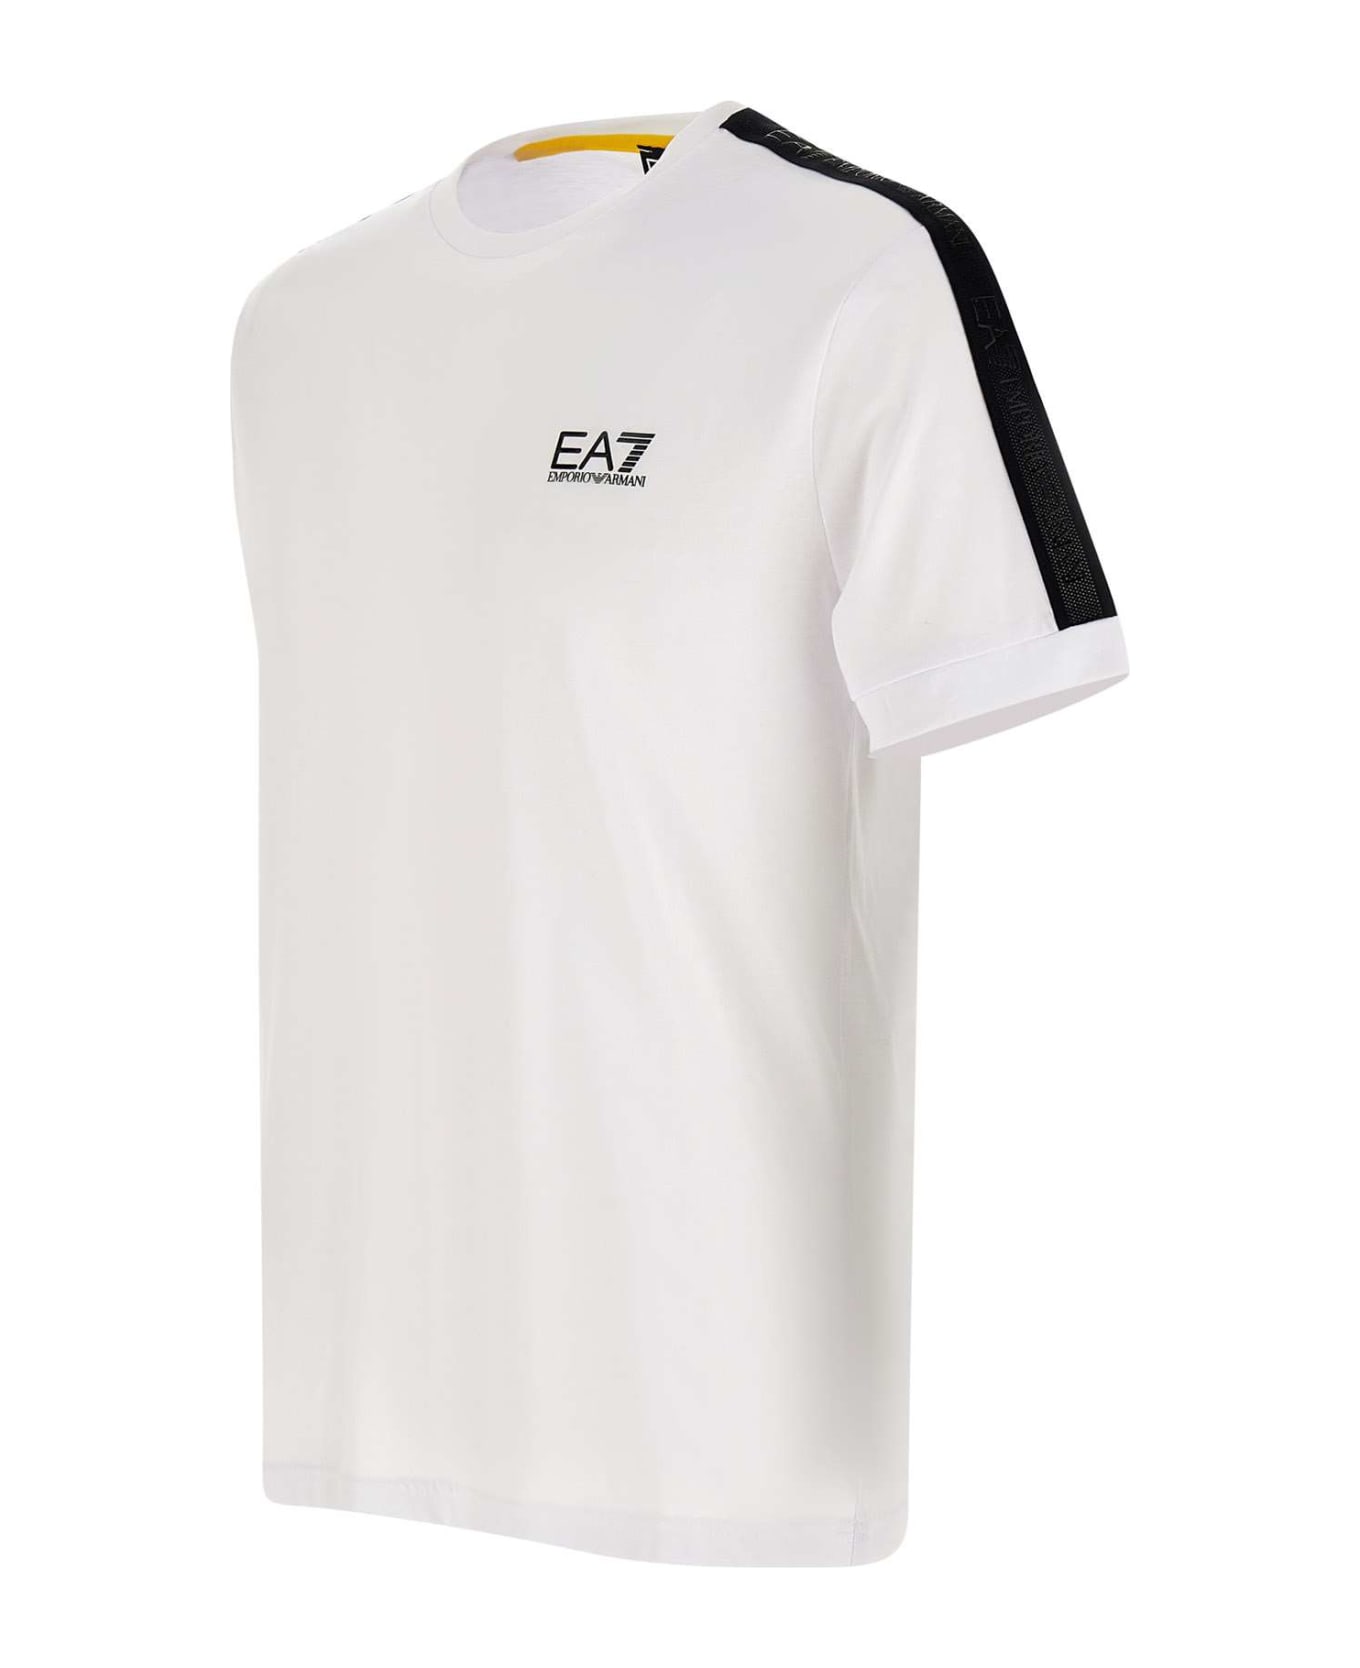 EA7 Cotton T-shirt